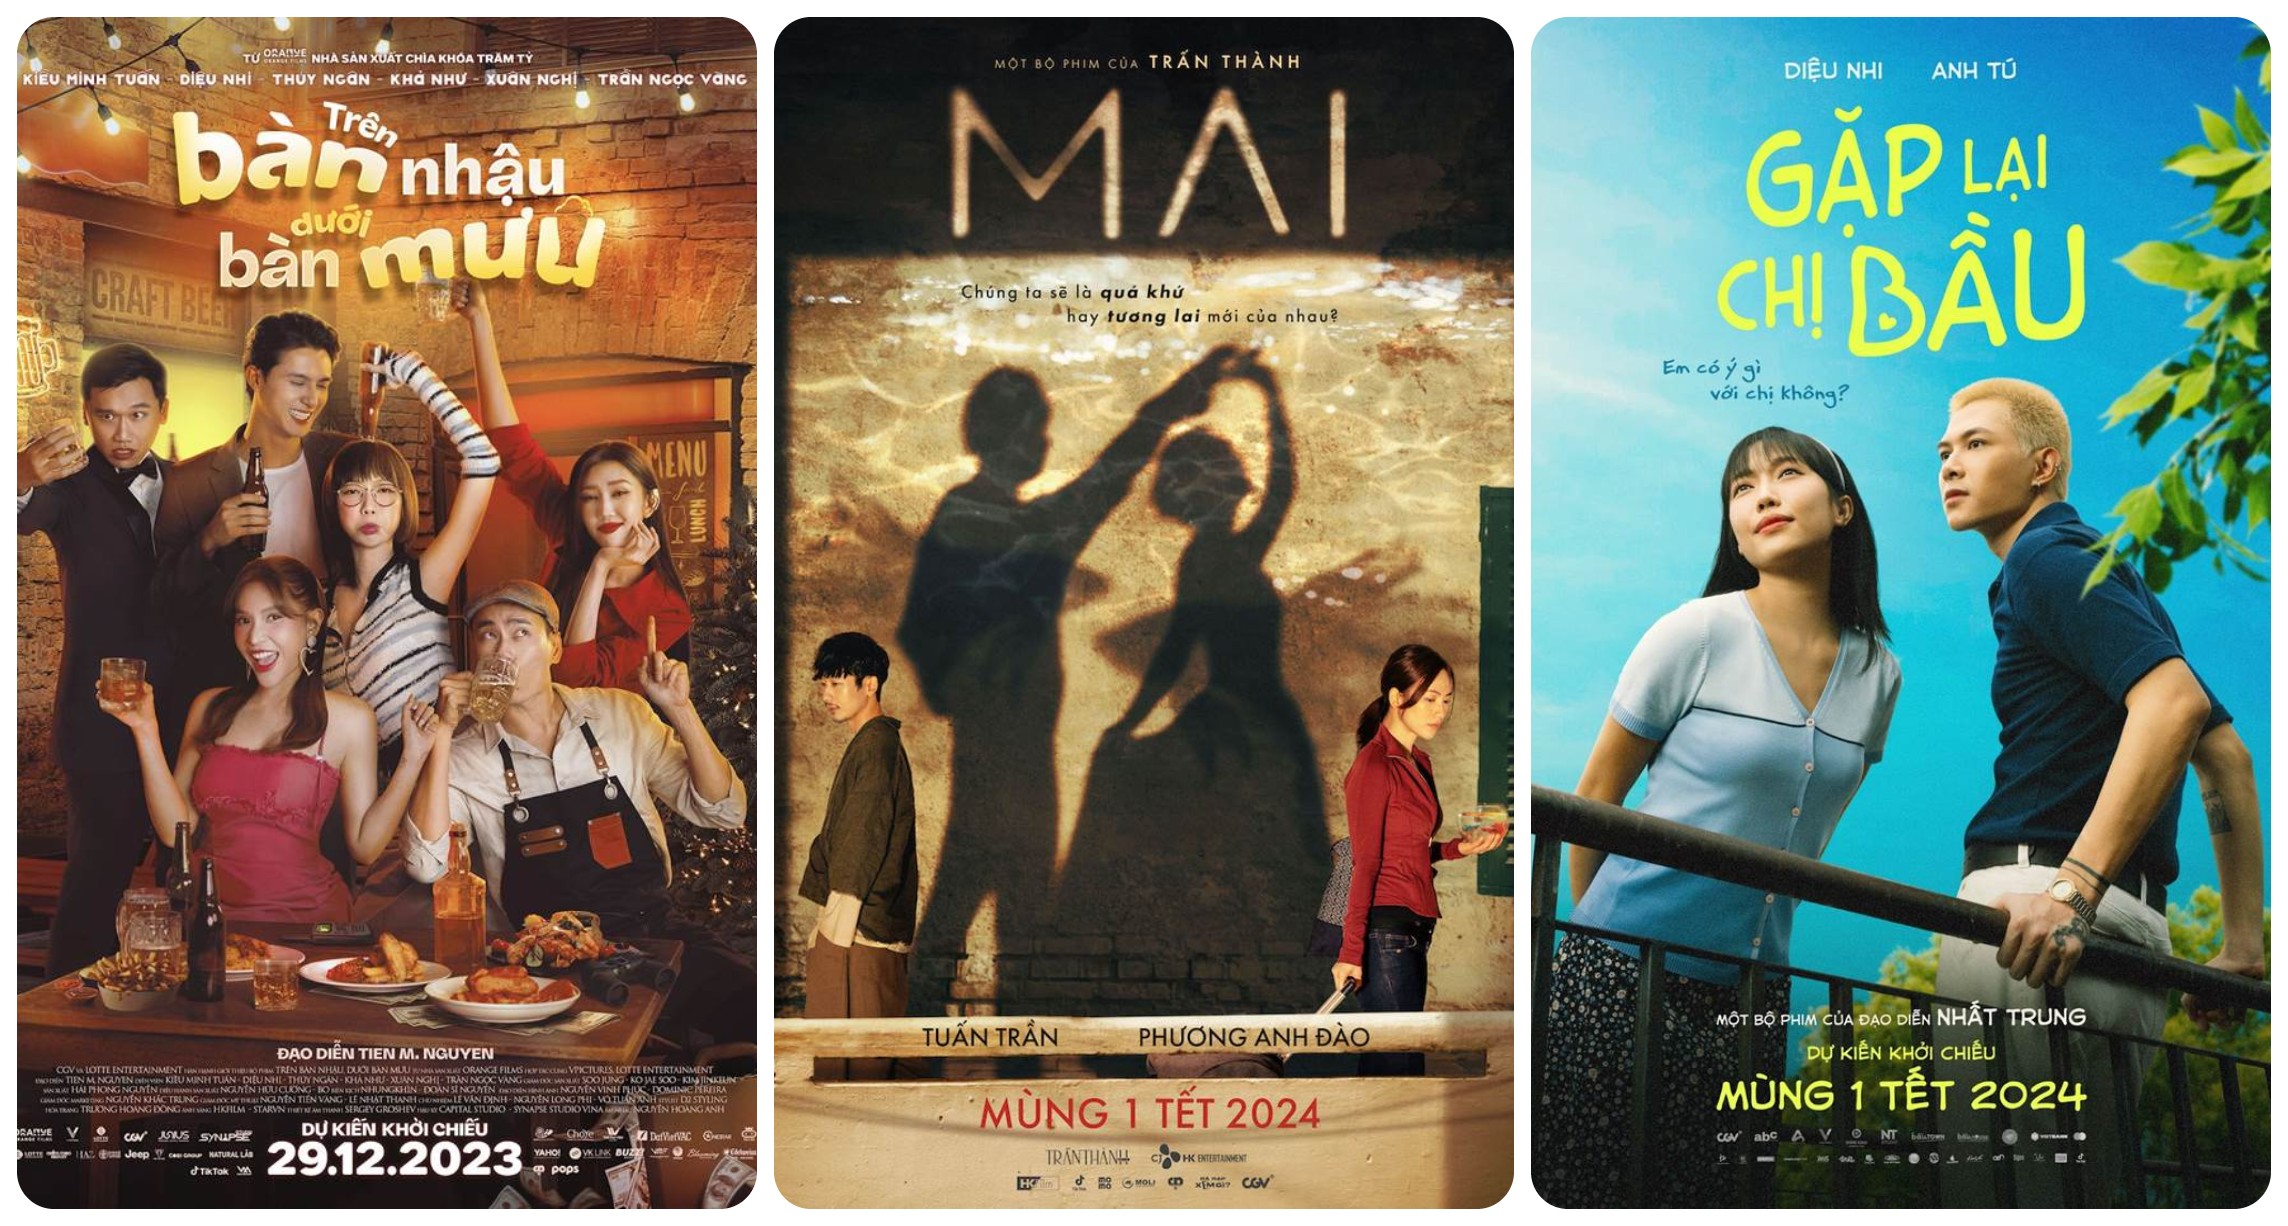  Dàn phim Việt tranh rạp chiếu dịp cuối năm 2023 